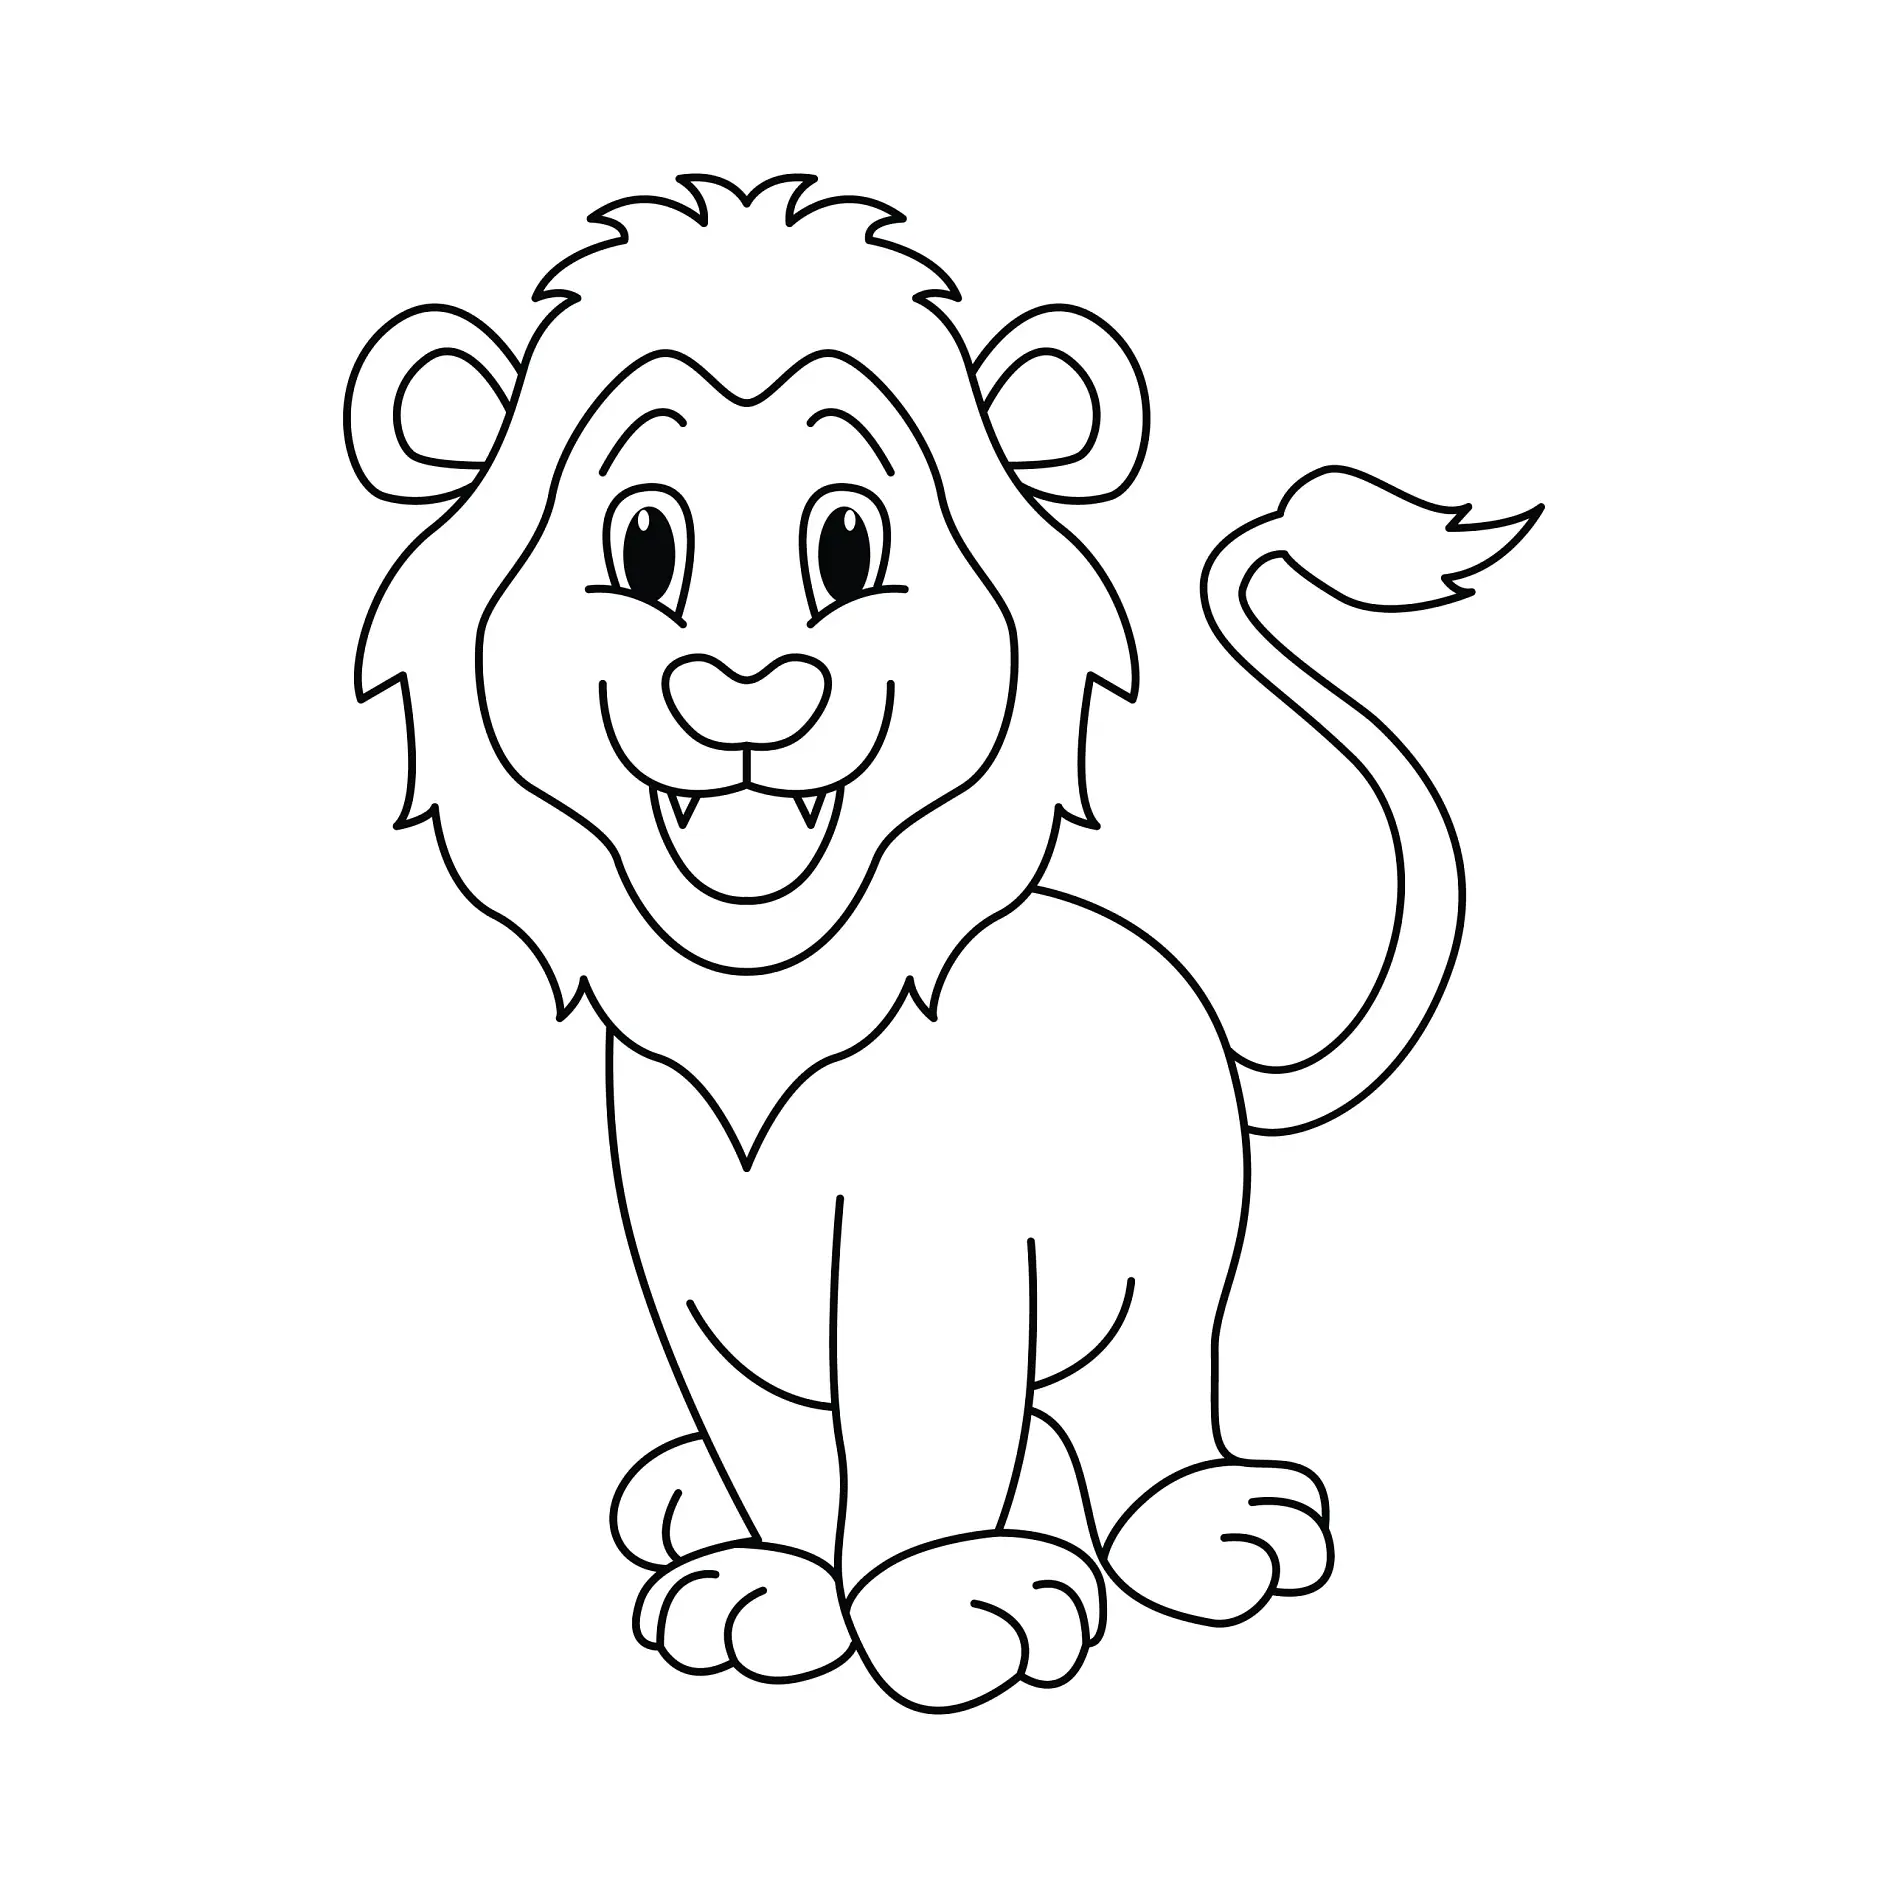 Ausmalbild Löwe sitzend mit aufgewecktem Blick lächelnd